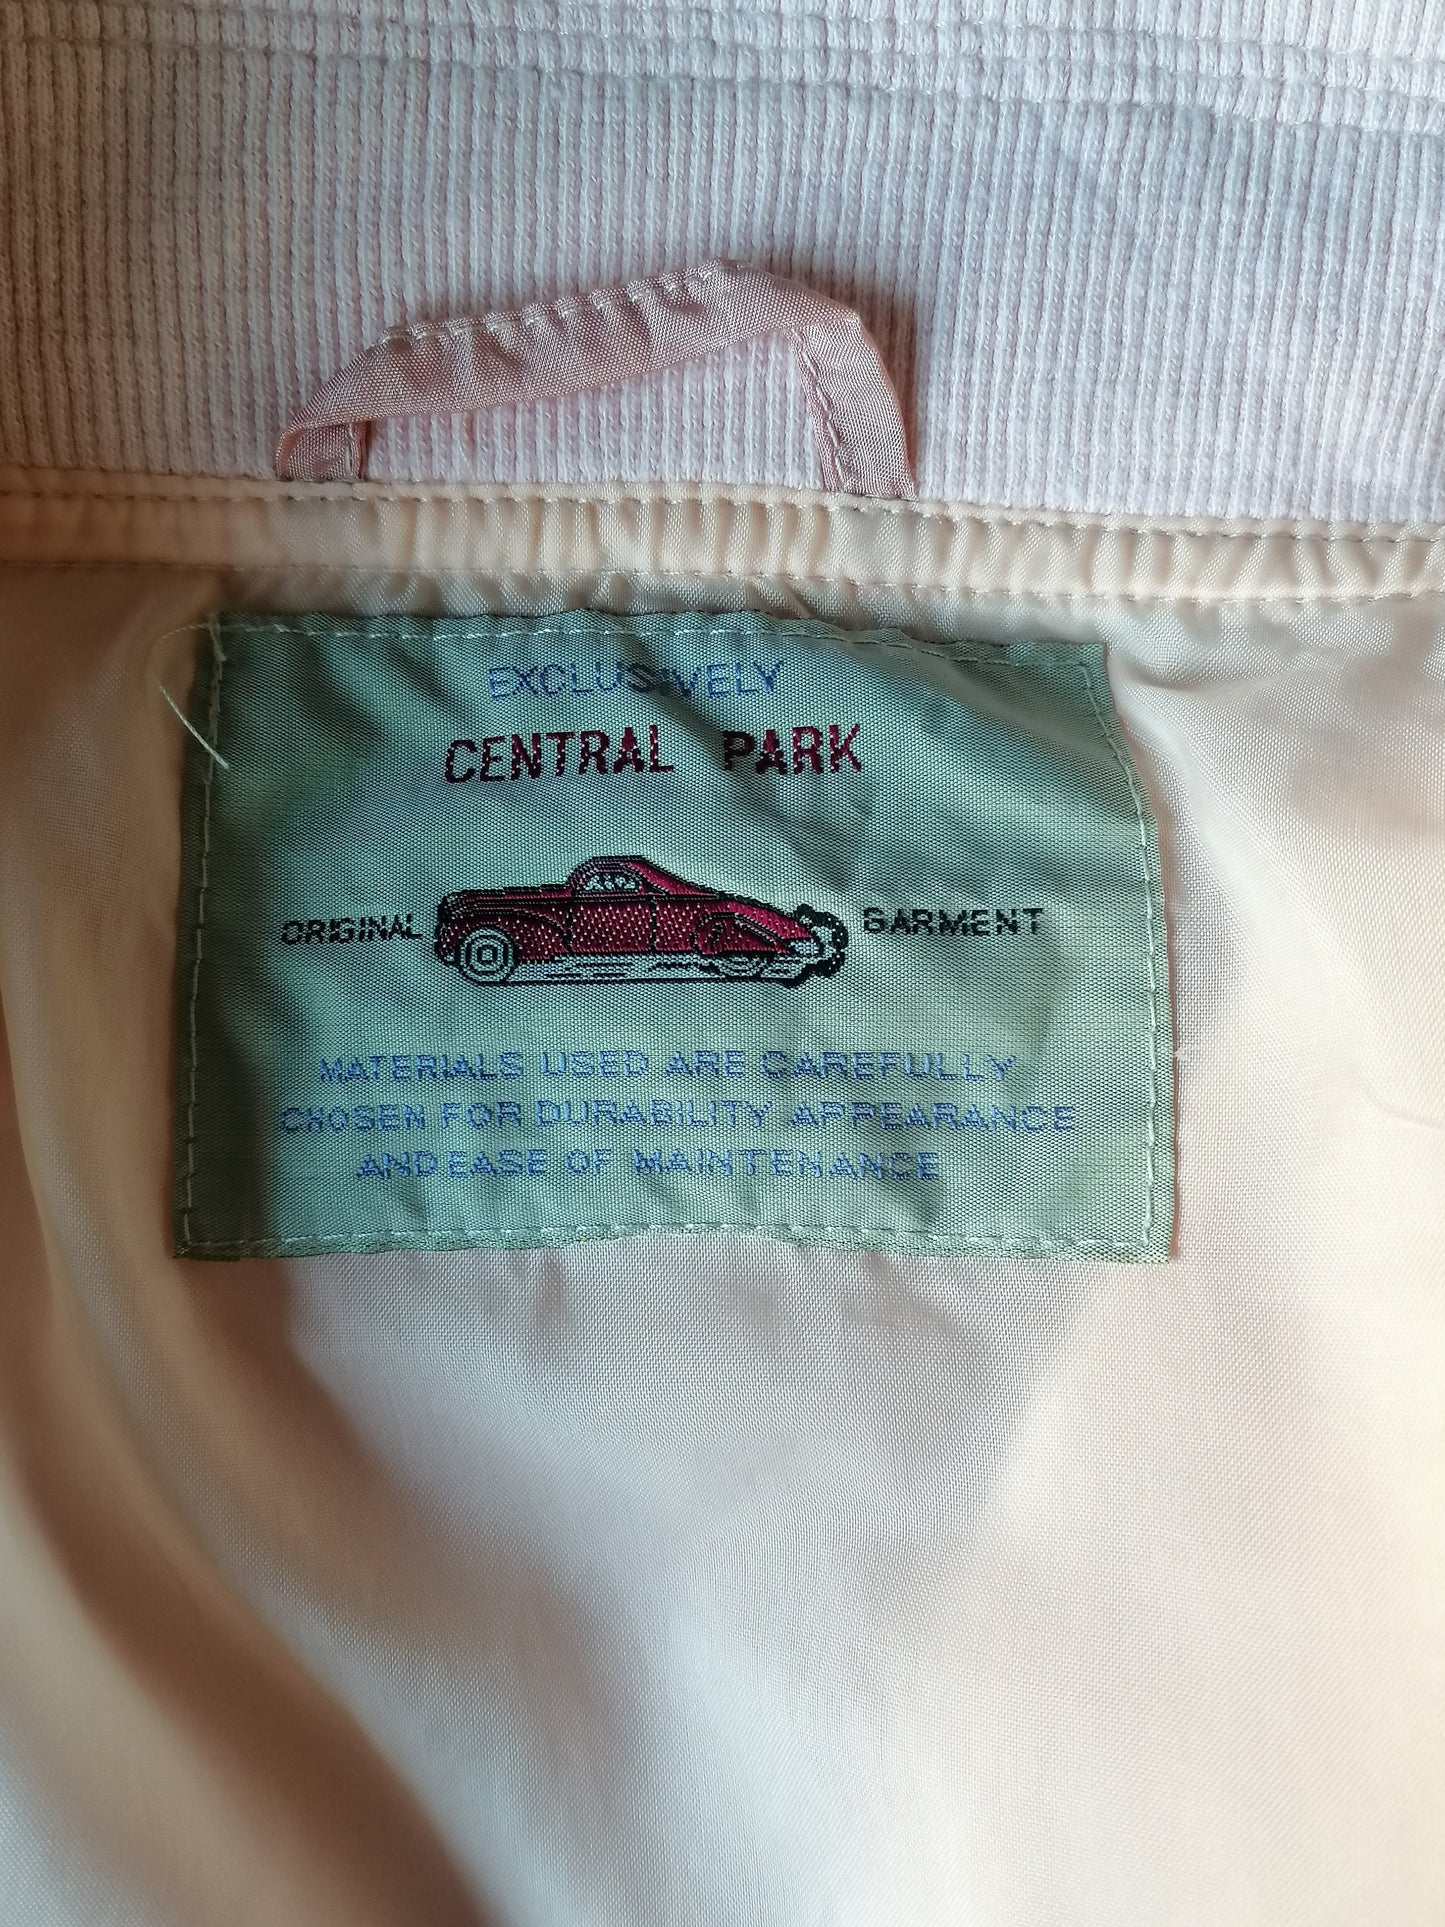 Vintage Central Park 80S-anni '90 giacca da allenamento con otturazioni per spalle. Colorato rosa. Dimensione XXL / 2XL.